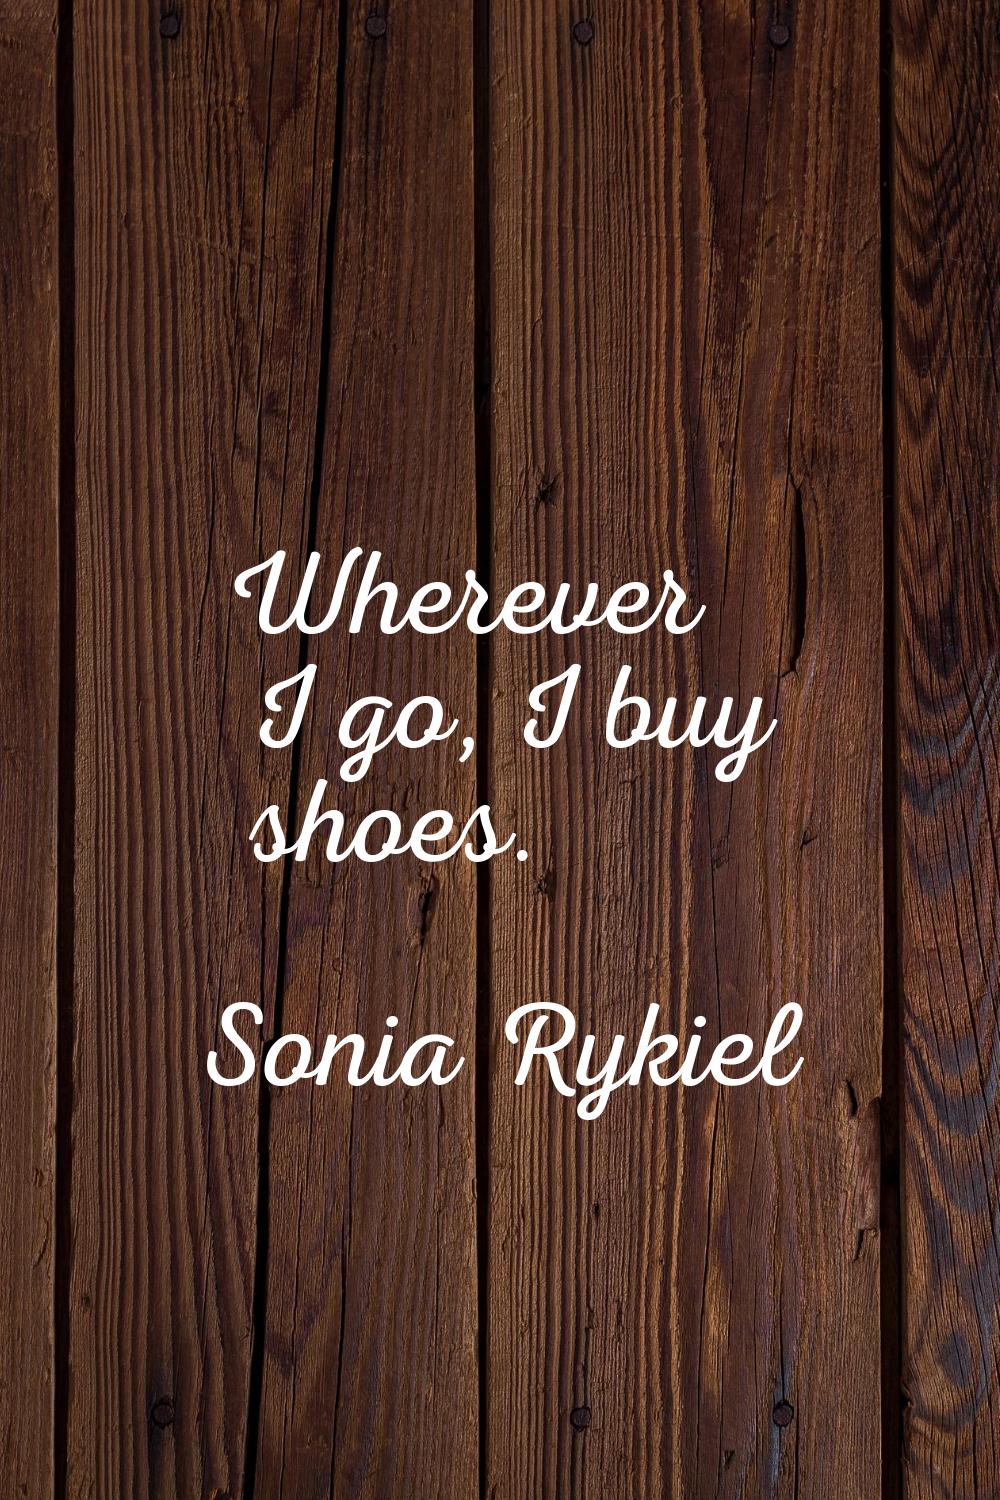 Wherever I go, I buy shoes.